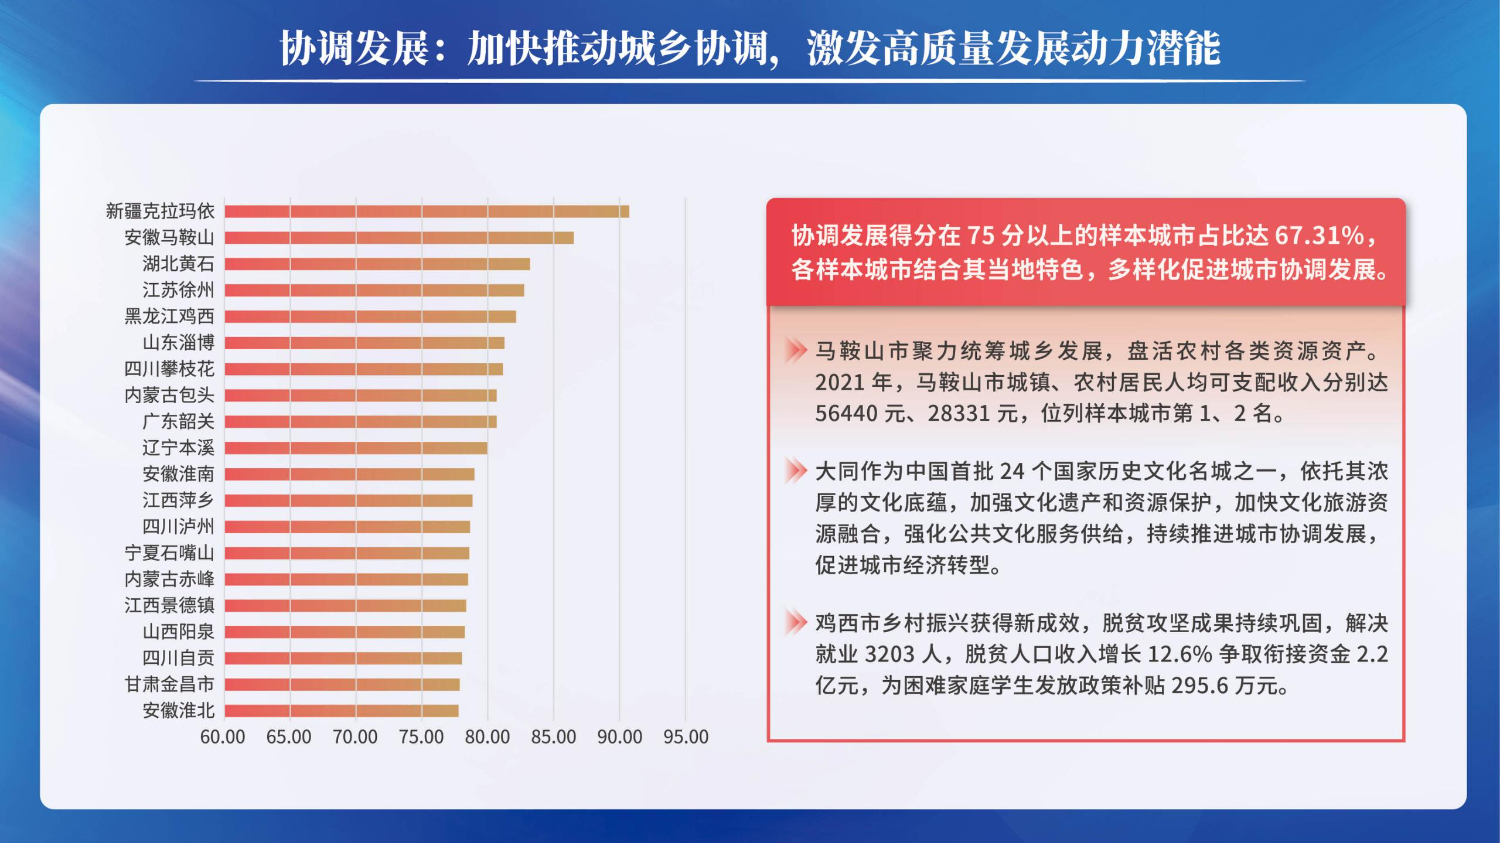 06201503中国资源型城市转型发展指数(1)_21.jpg